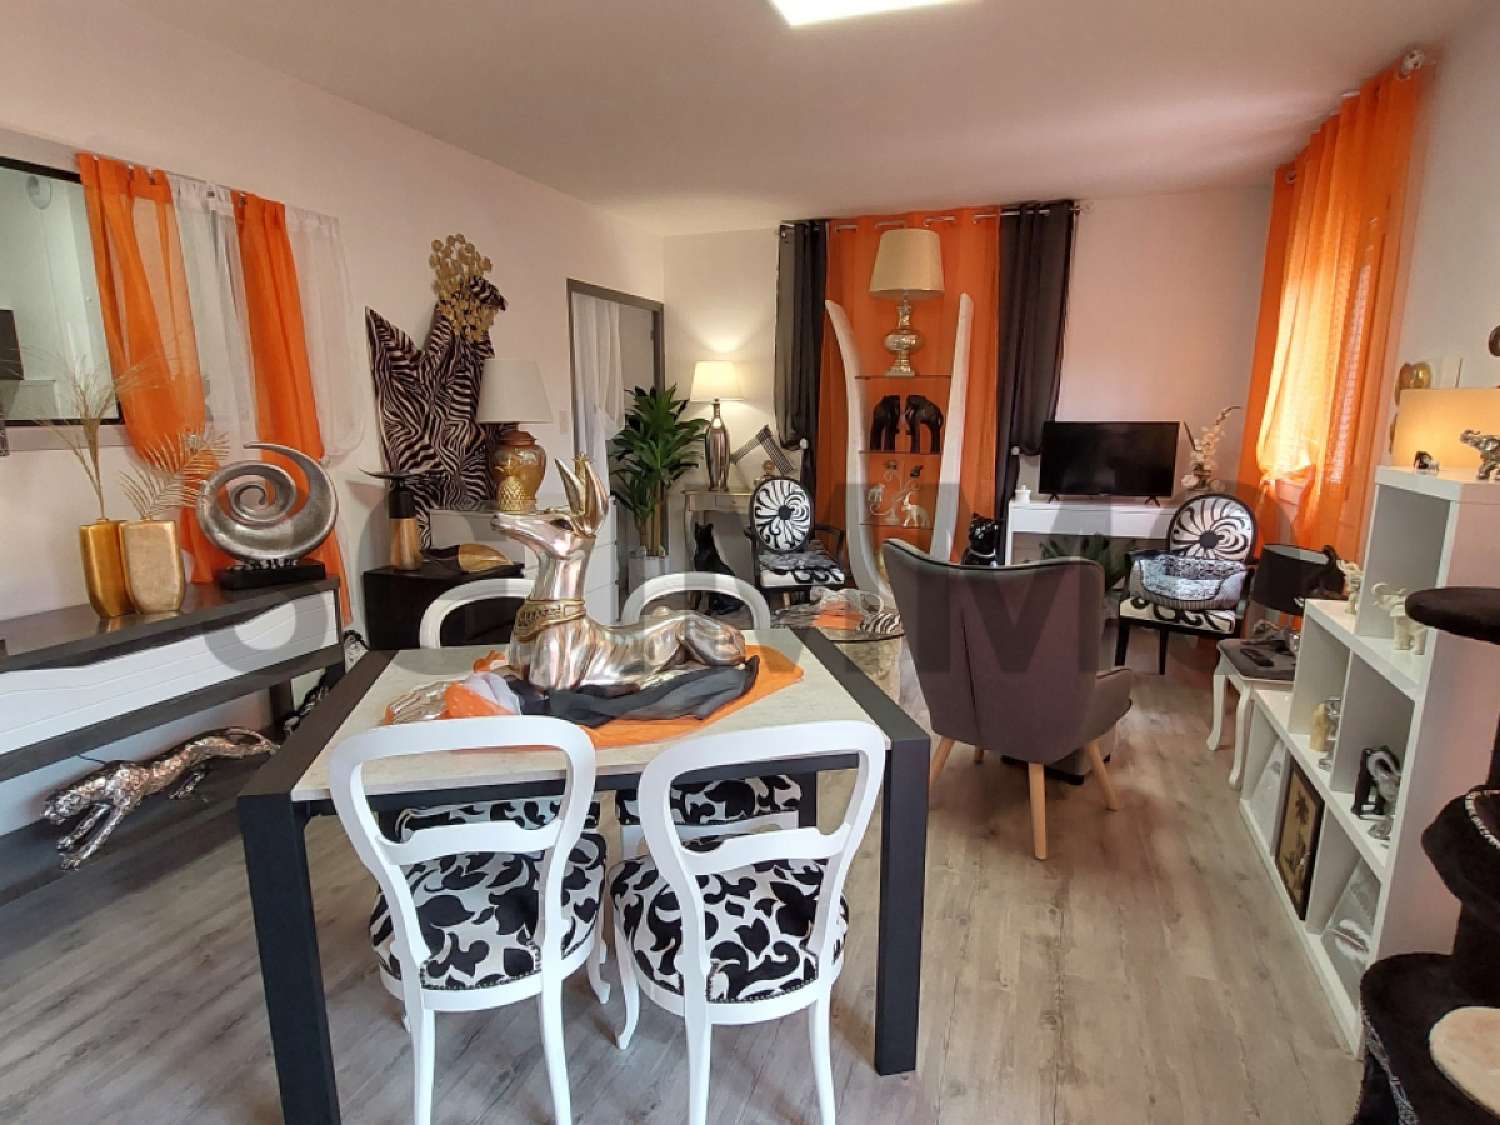  à vendre appartement Montbazens Aveyron 4